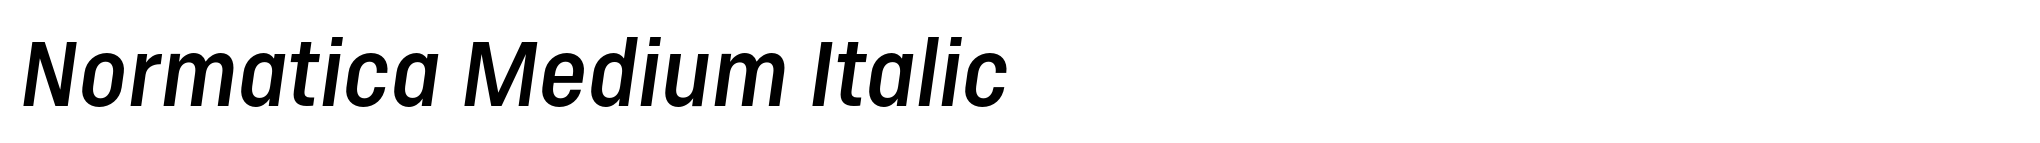 Normatica Medium Italic image